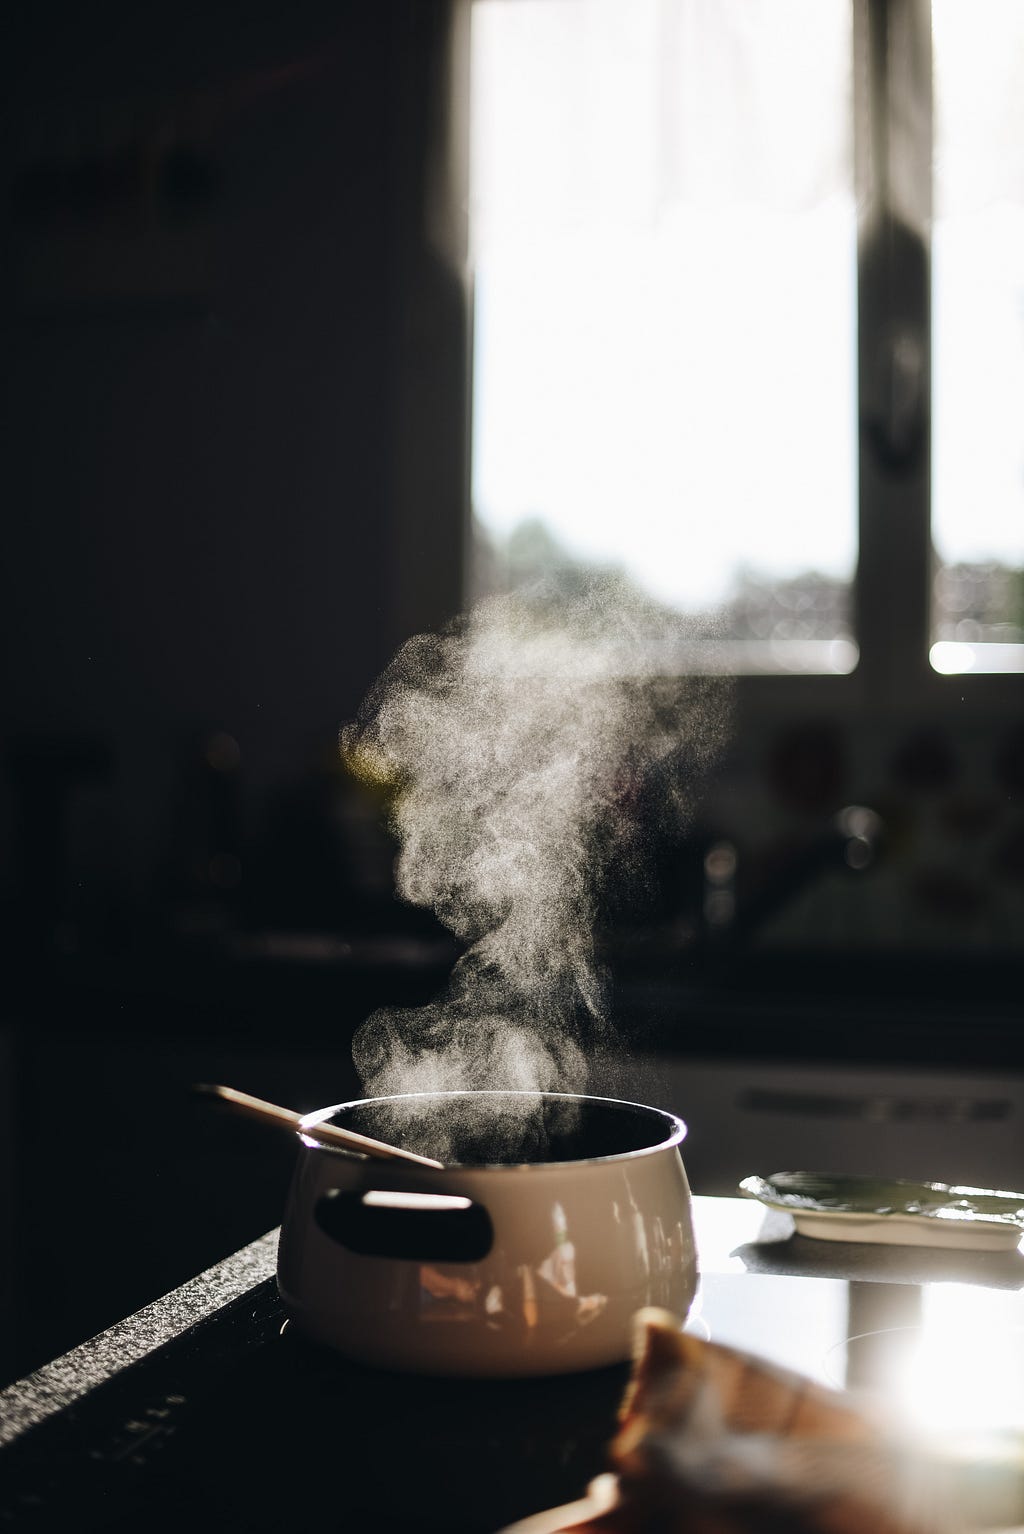 Image of a smoke emitting pan kept on stove